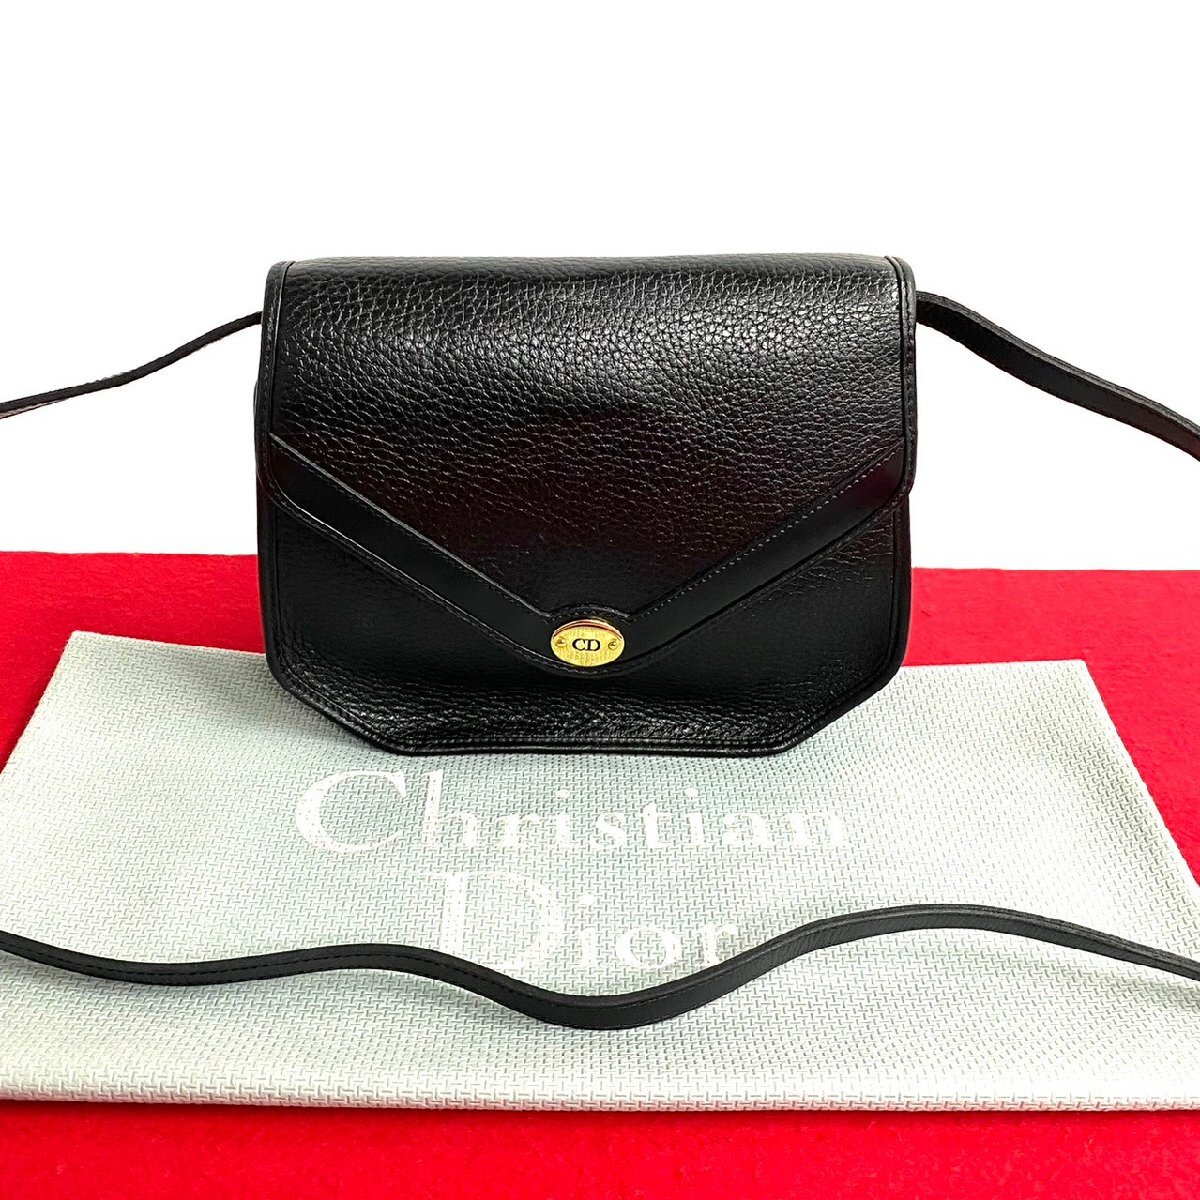 ほぼ未使用 保存袋付 Christian Dior クリスチャンディオール CD ロゴ 金具 レザー ショルダーバッグ サコッシュ ブラック 70199_画像1